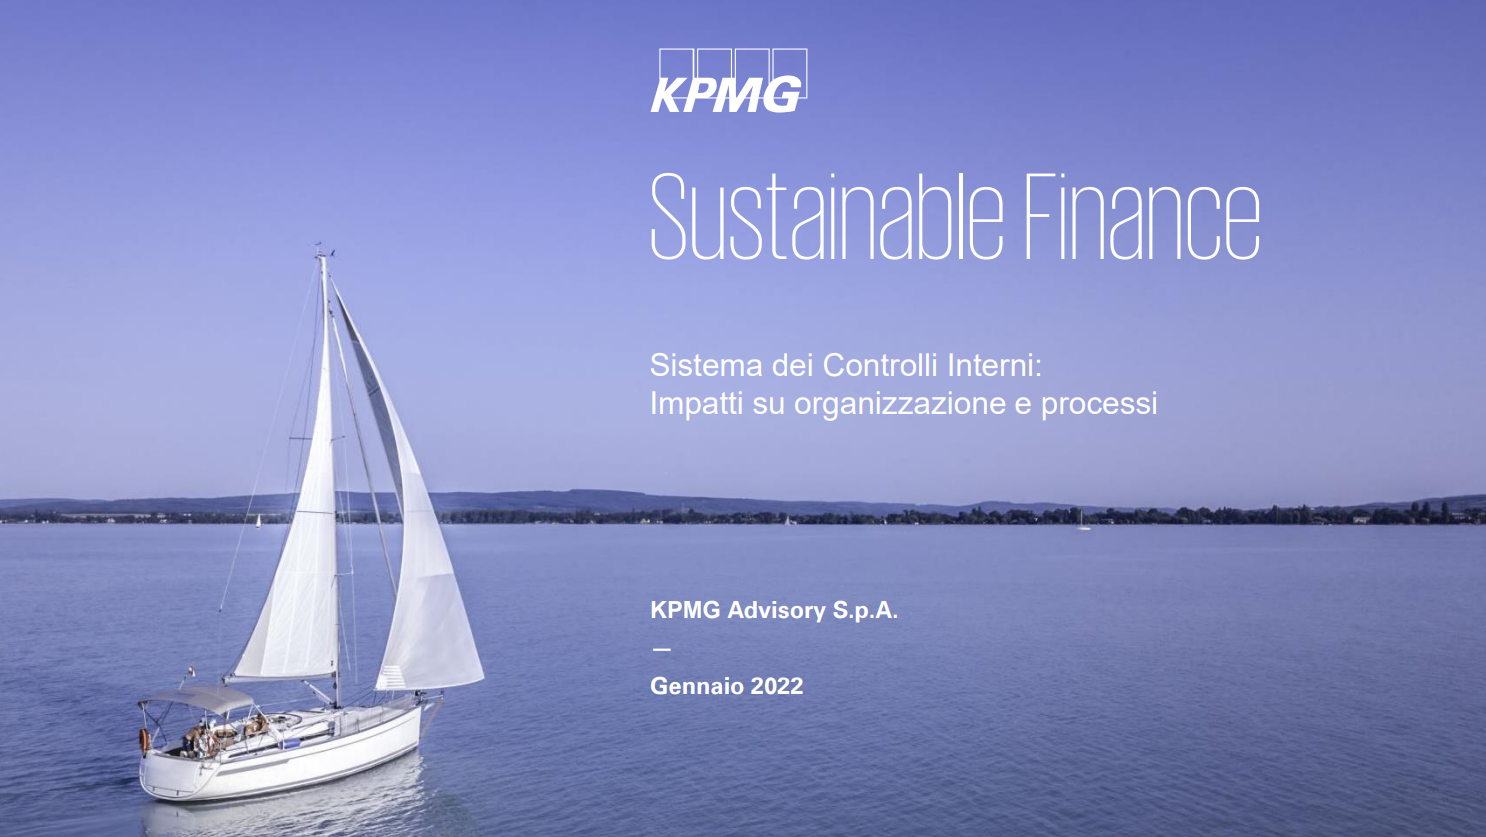 KPMG Sustainable Finance